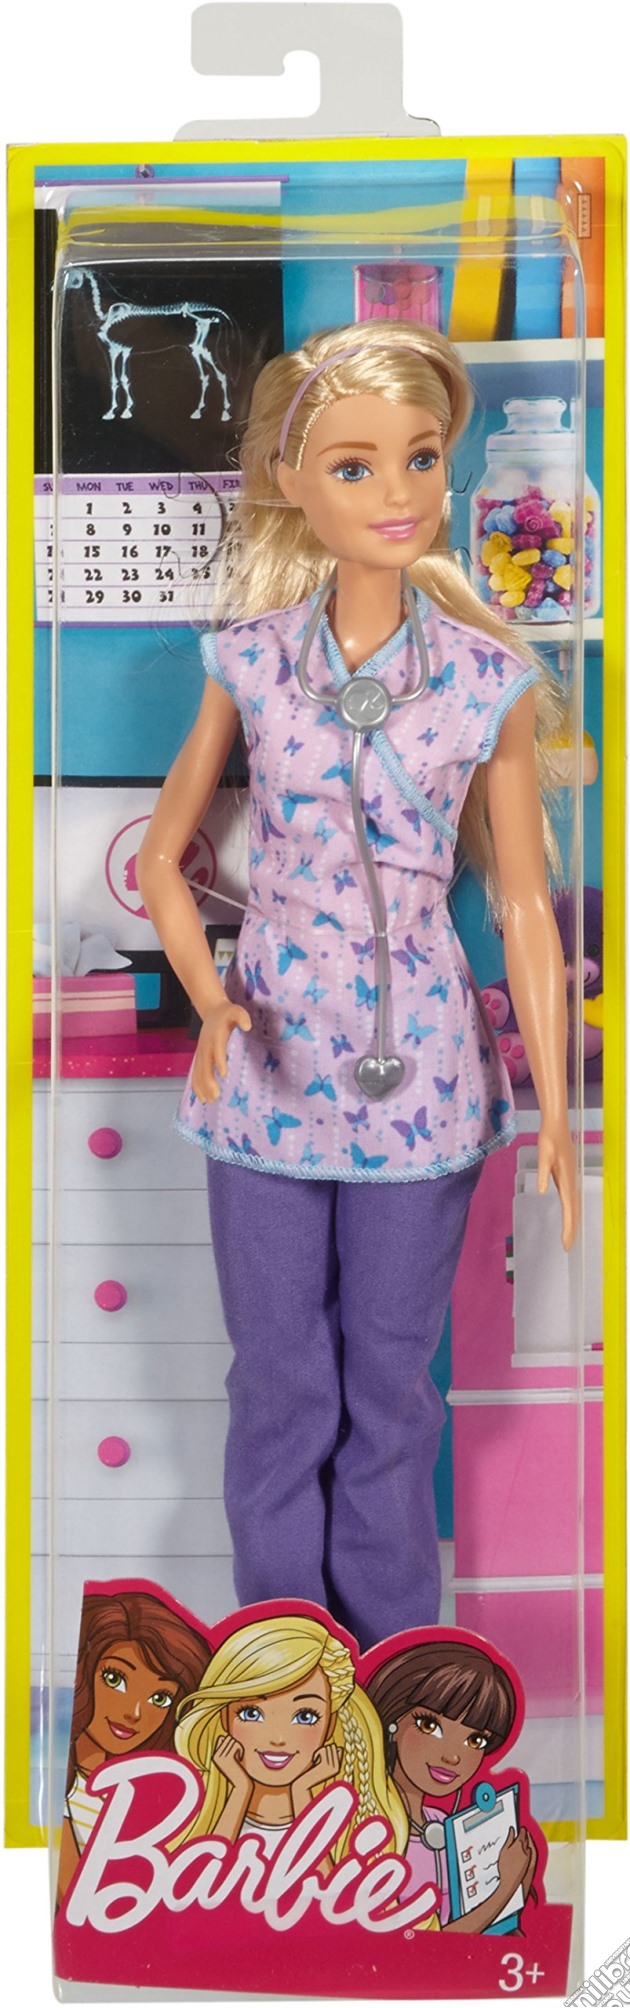 Mattel DVF57 - Barbie - I Can Be - Infermiera gioco di Mattel